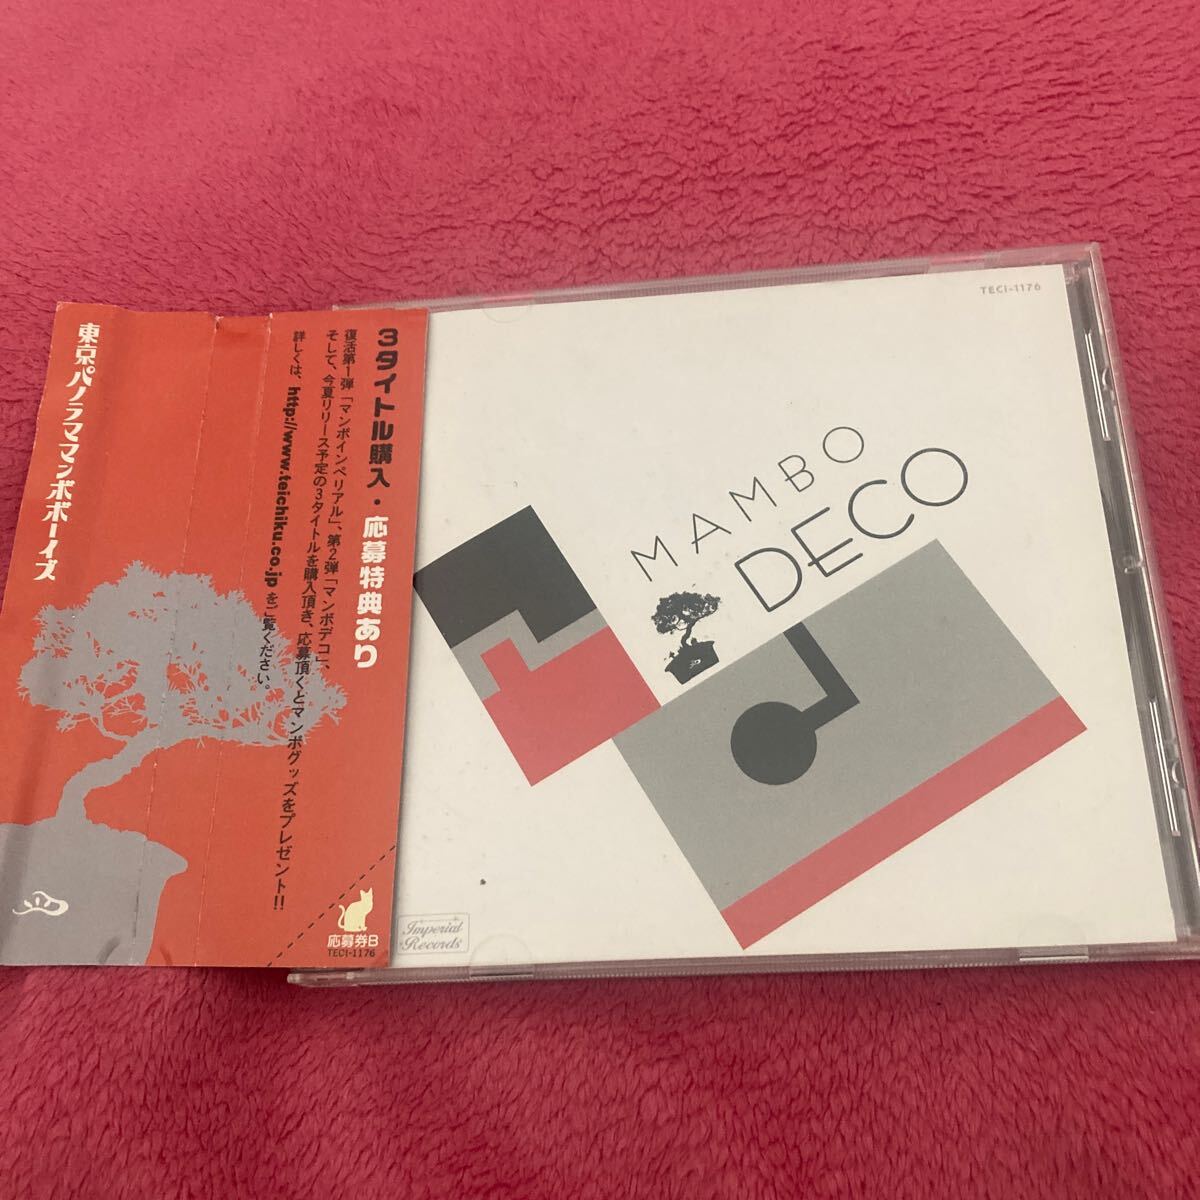 マンボデコ　CD 東京パノラママンボボーイズ_画像1